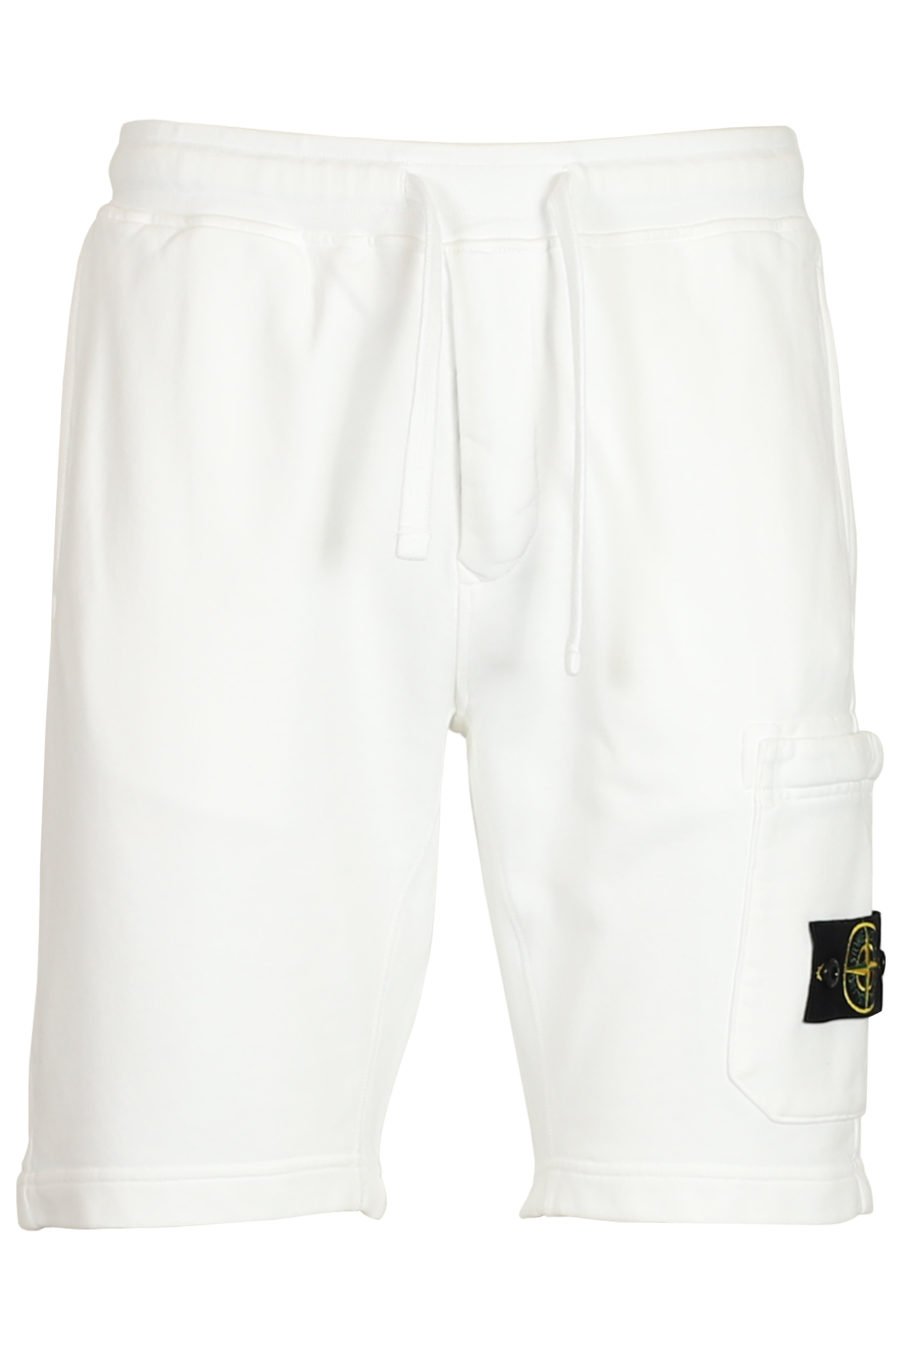 Pantalón corto de chándal blanco - IMG 3770